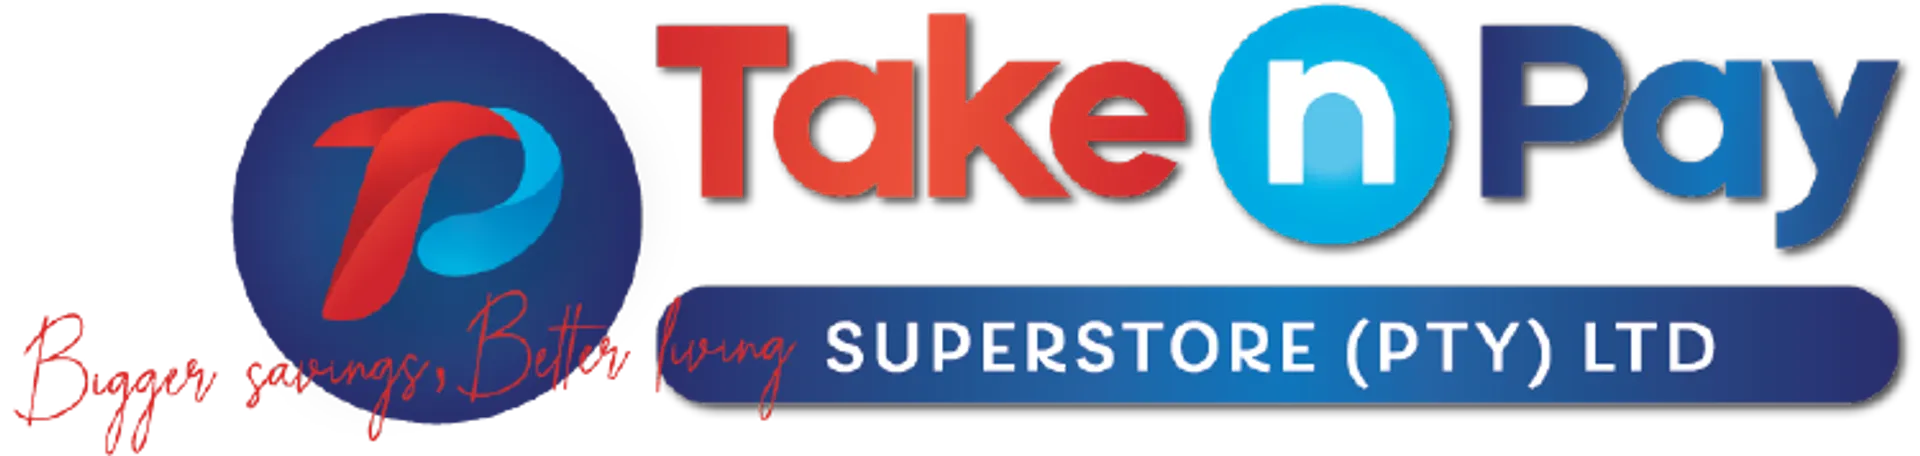 TAKE N PAY logo